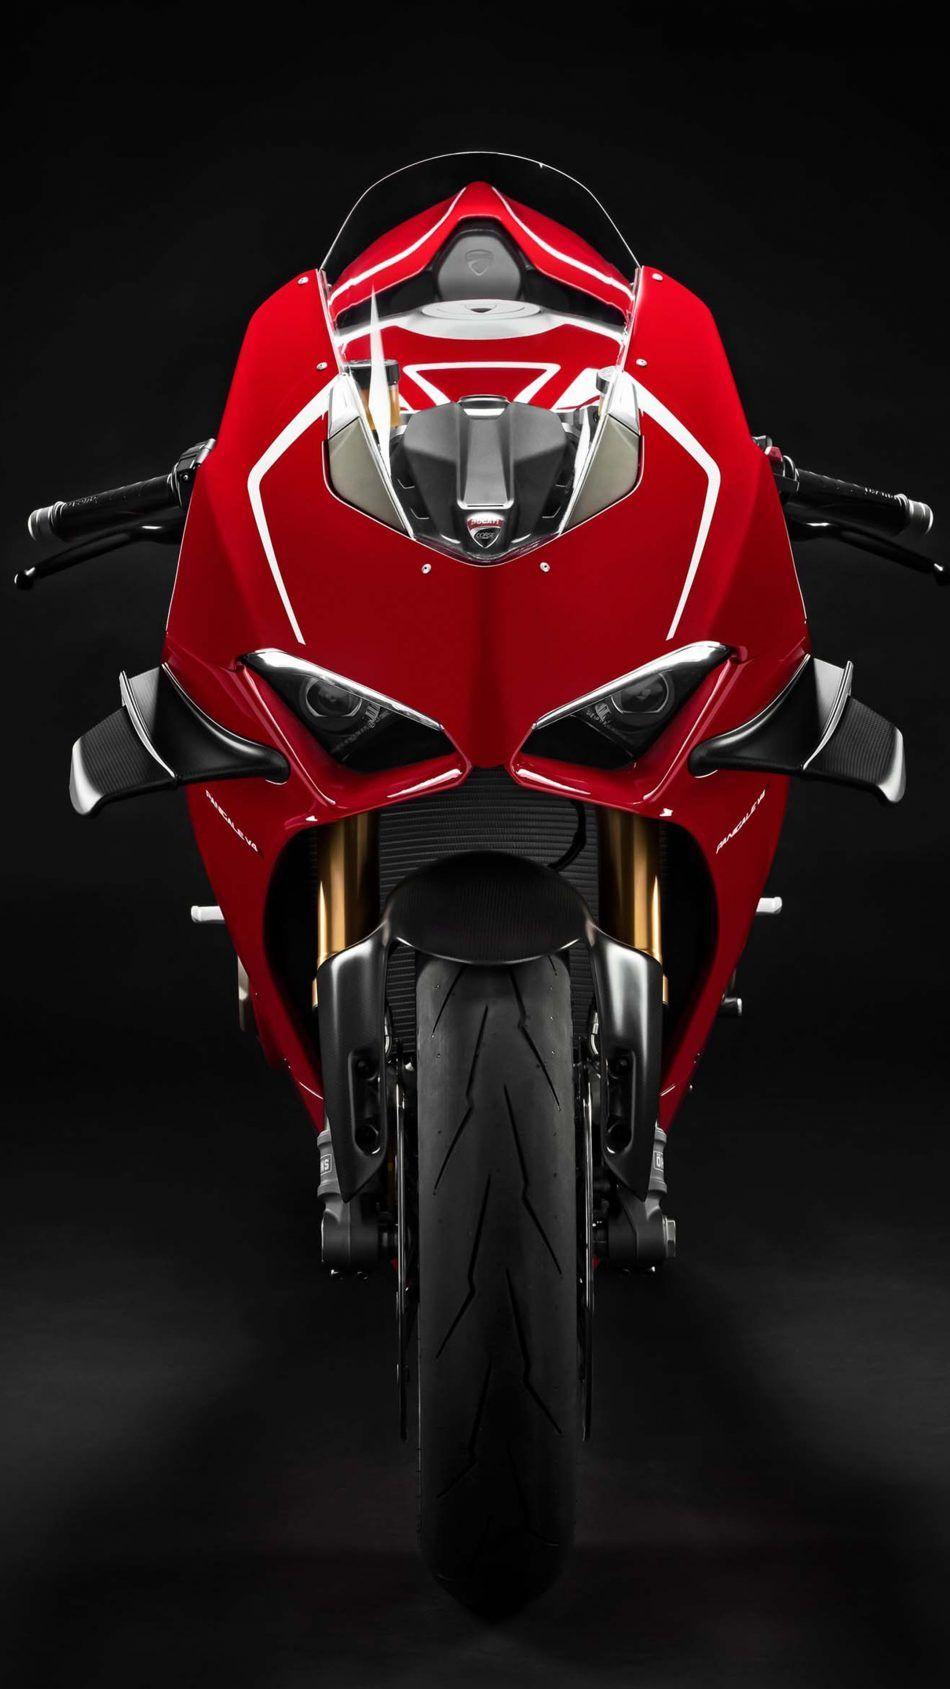 Đánh giá nhanh Ducati Superleggera V4 Quái thú trường đua 234 mã lực mang  vẻ đẹp hoàn mỹ